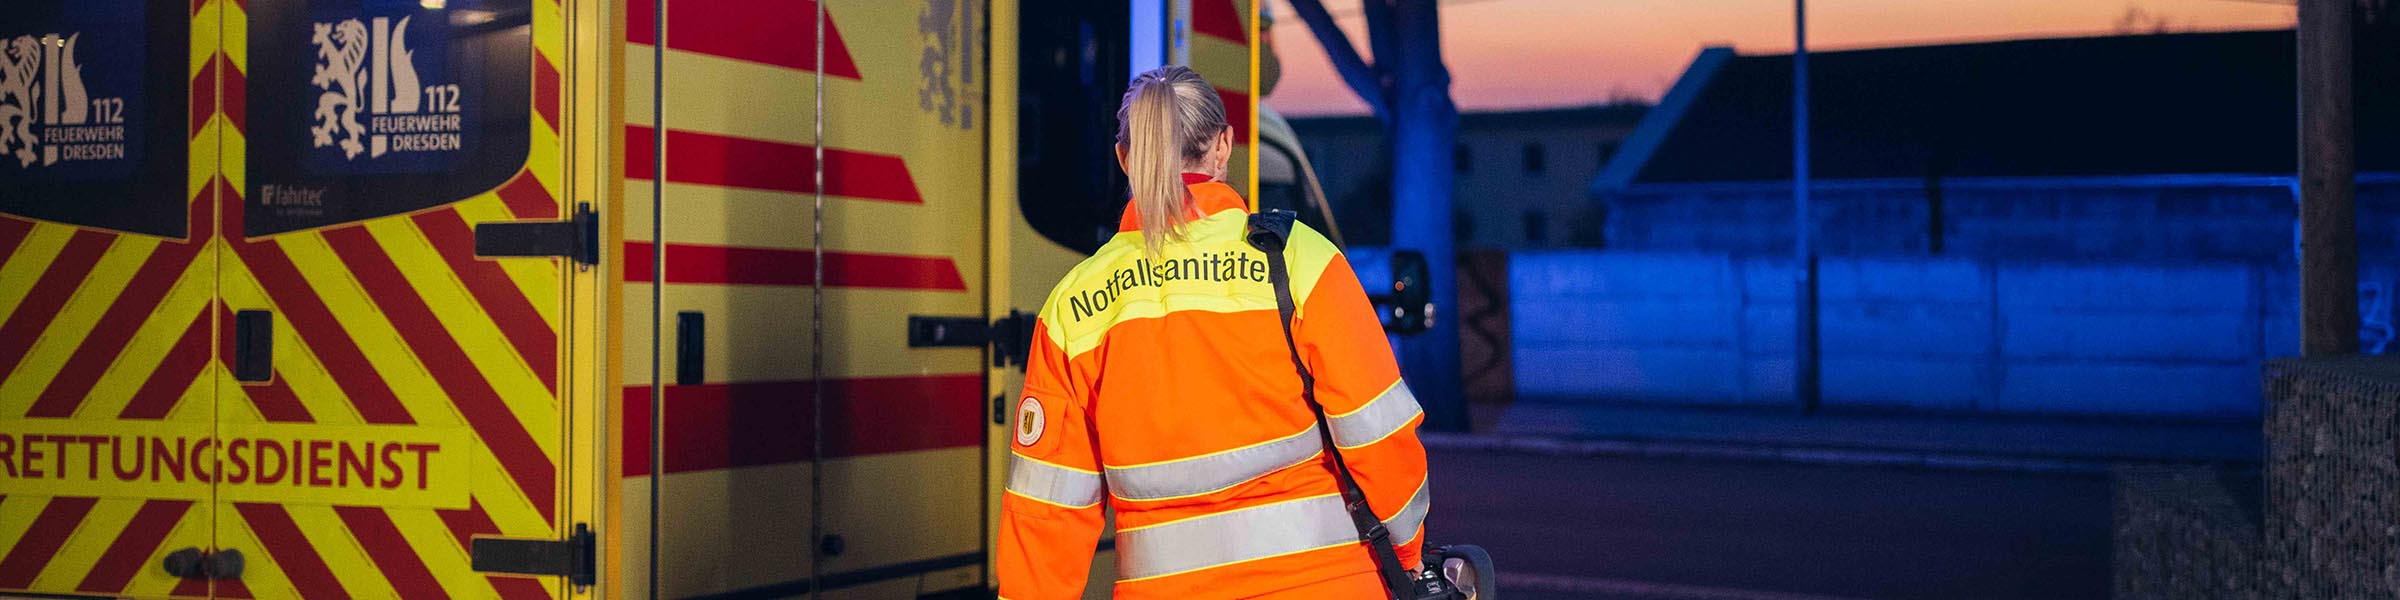 Notfallsanitäterin neben einem Rettungsdienstfahrzeug